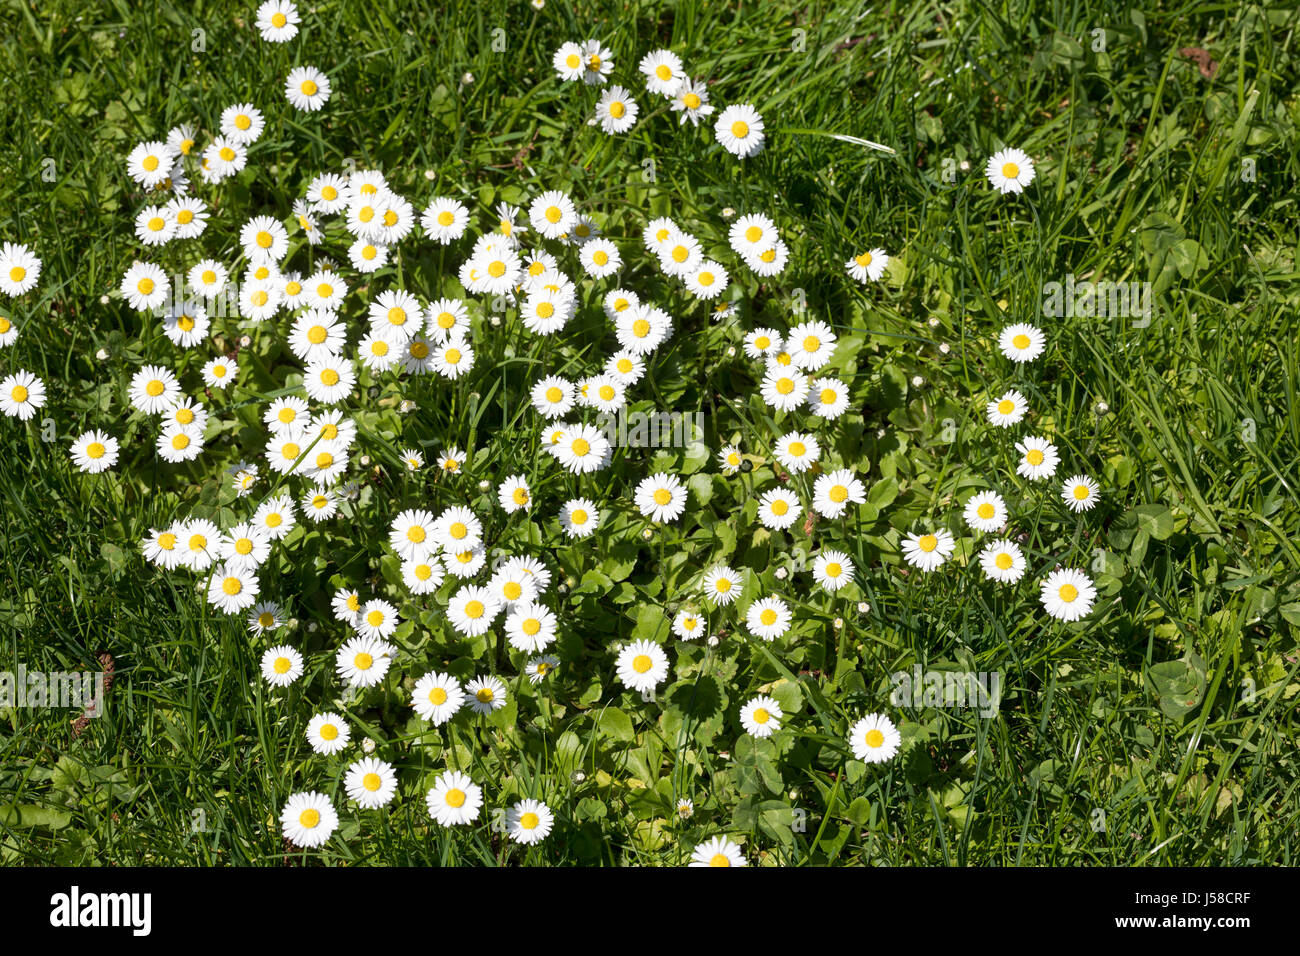 Gänseblümchen, Maßliebchen, Bellis perennis, English Daisy, Pâquerette Stock Photo